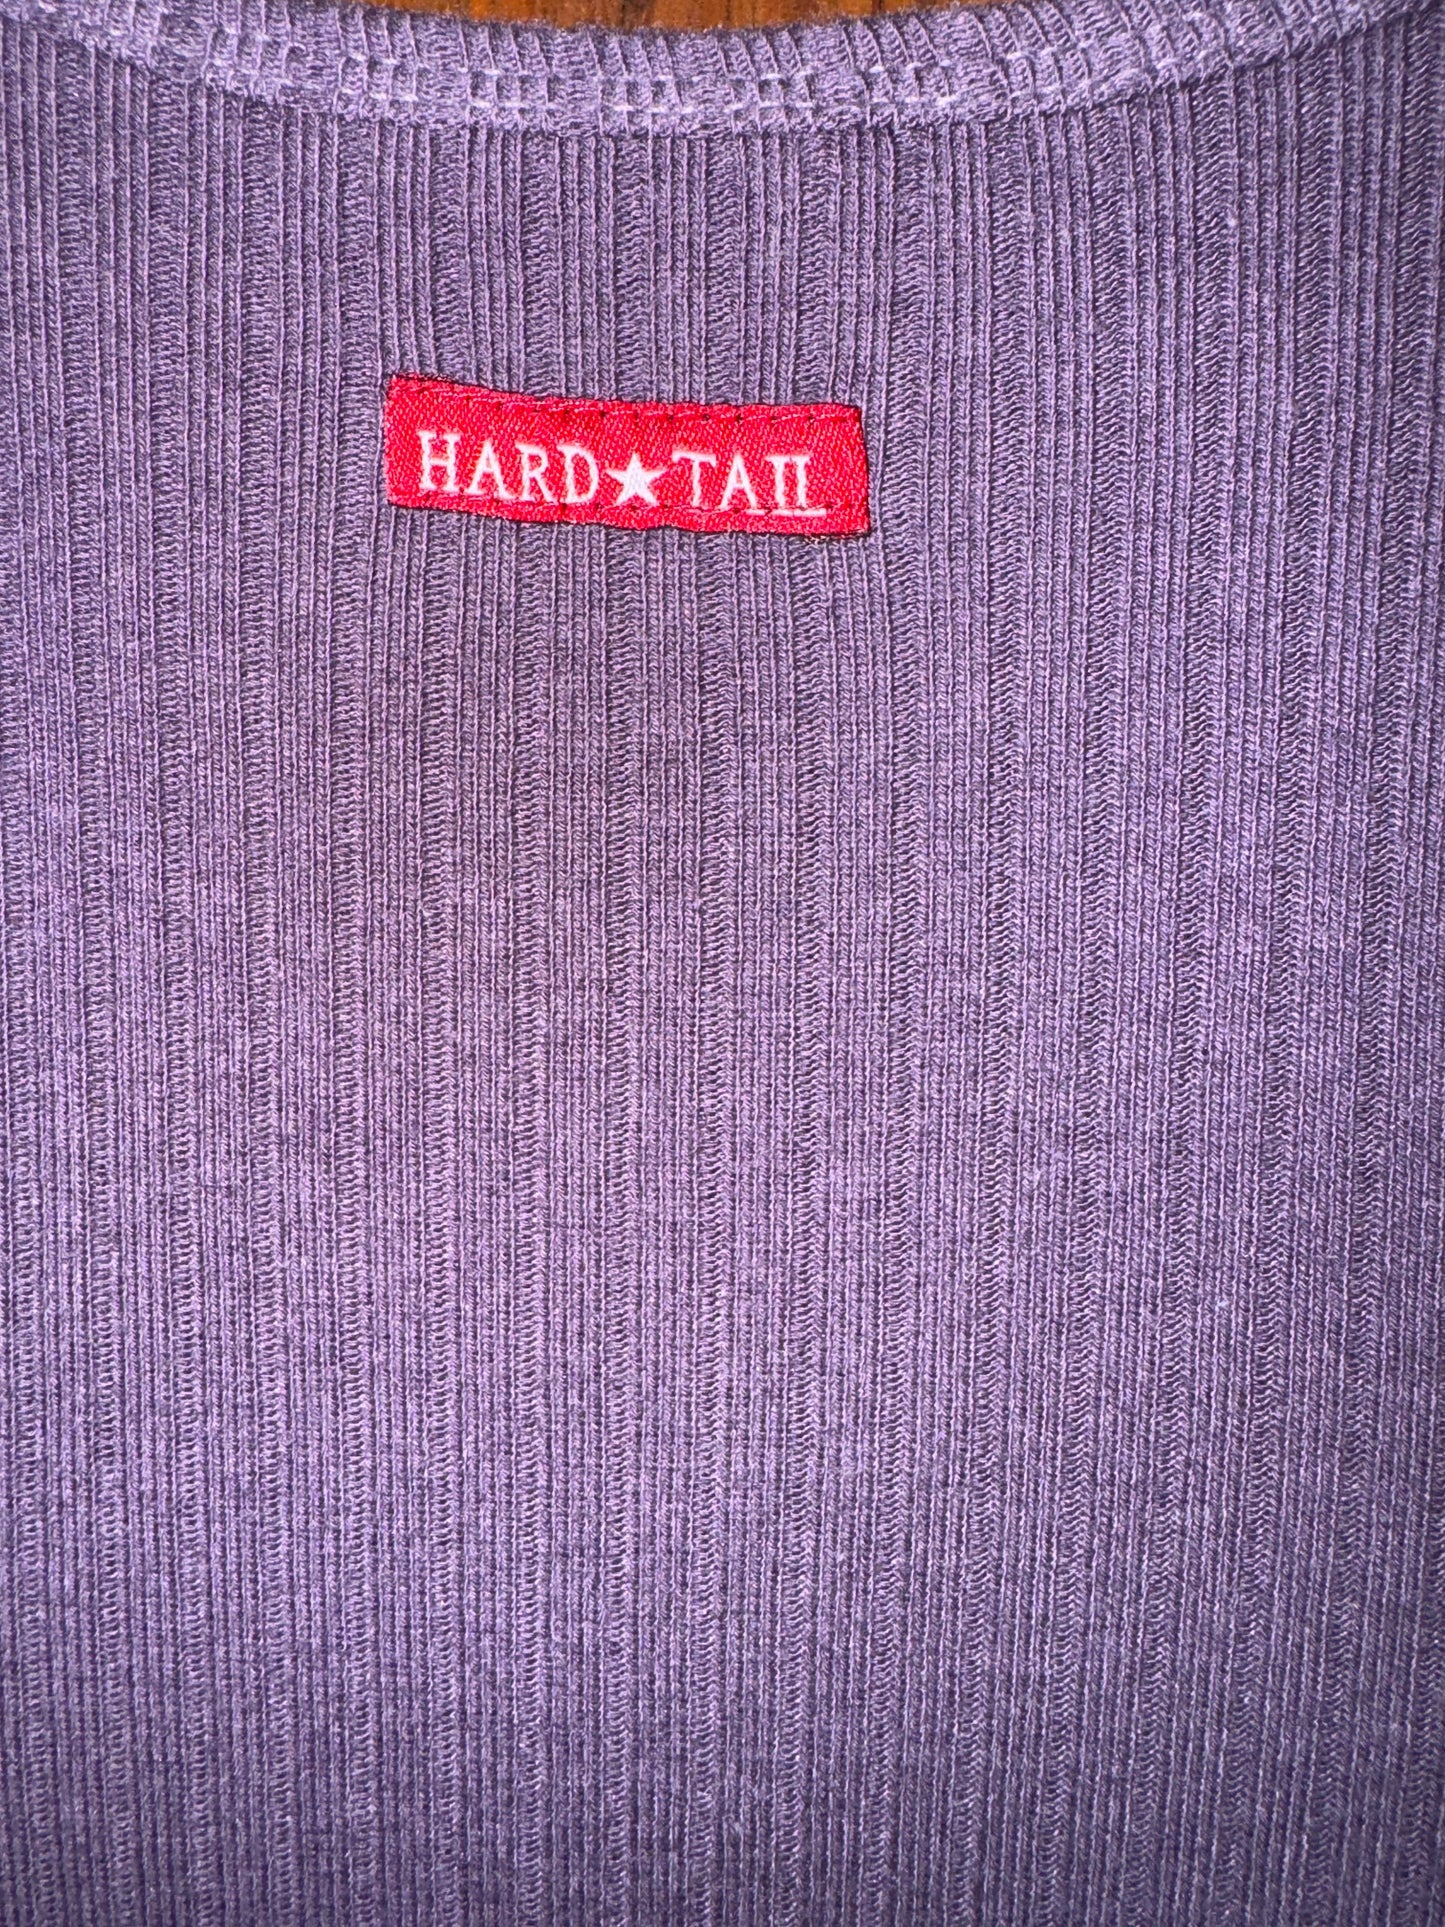 Hardtail